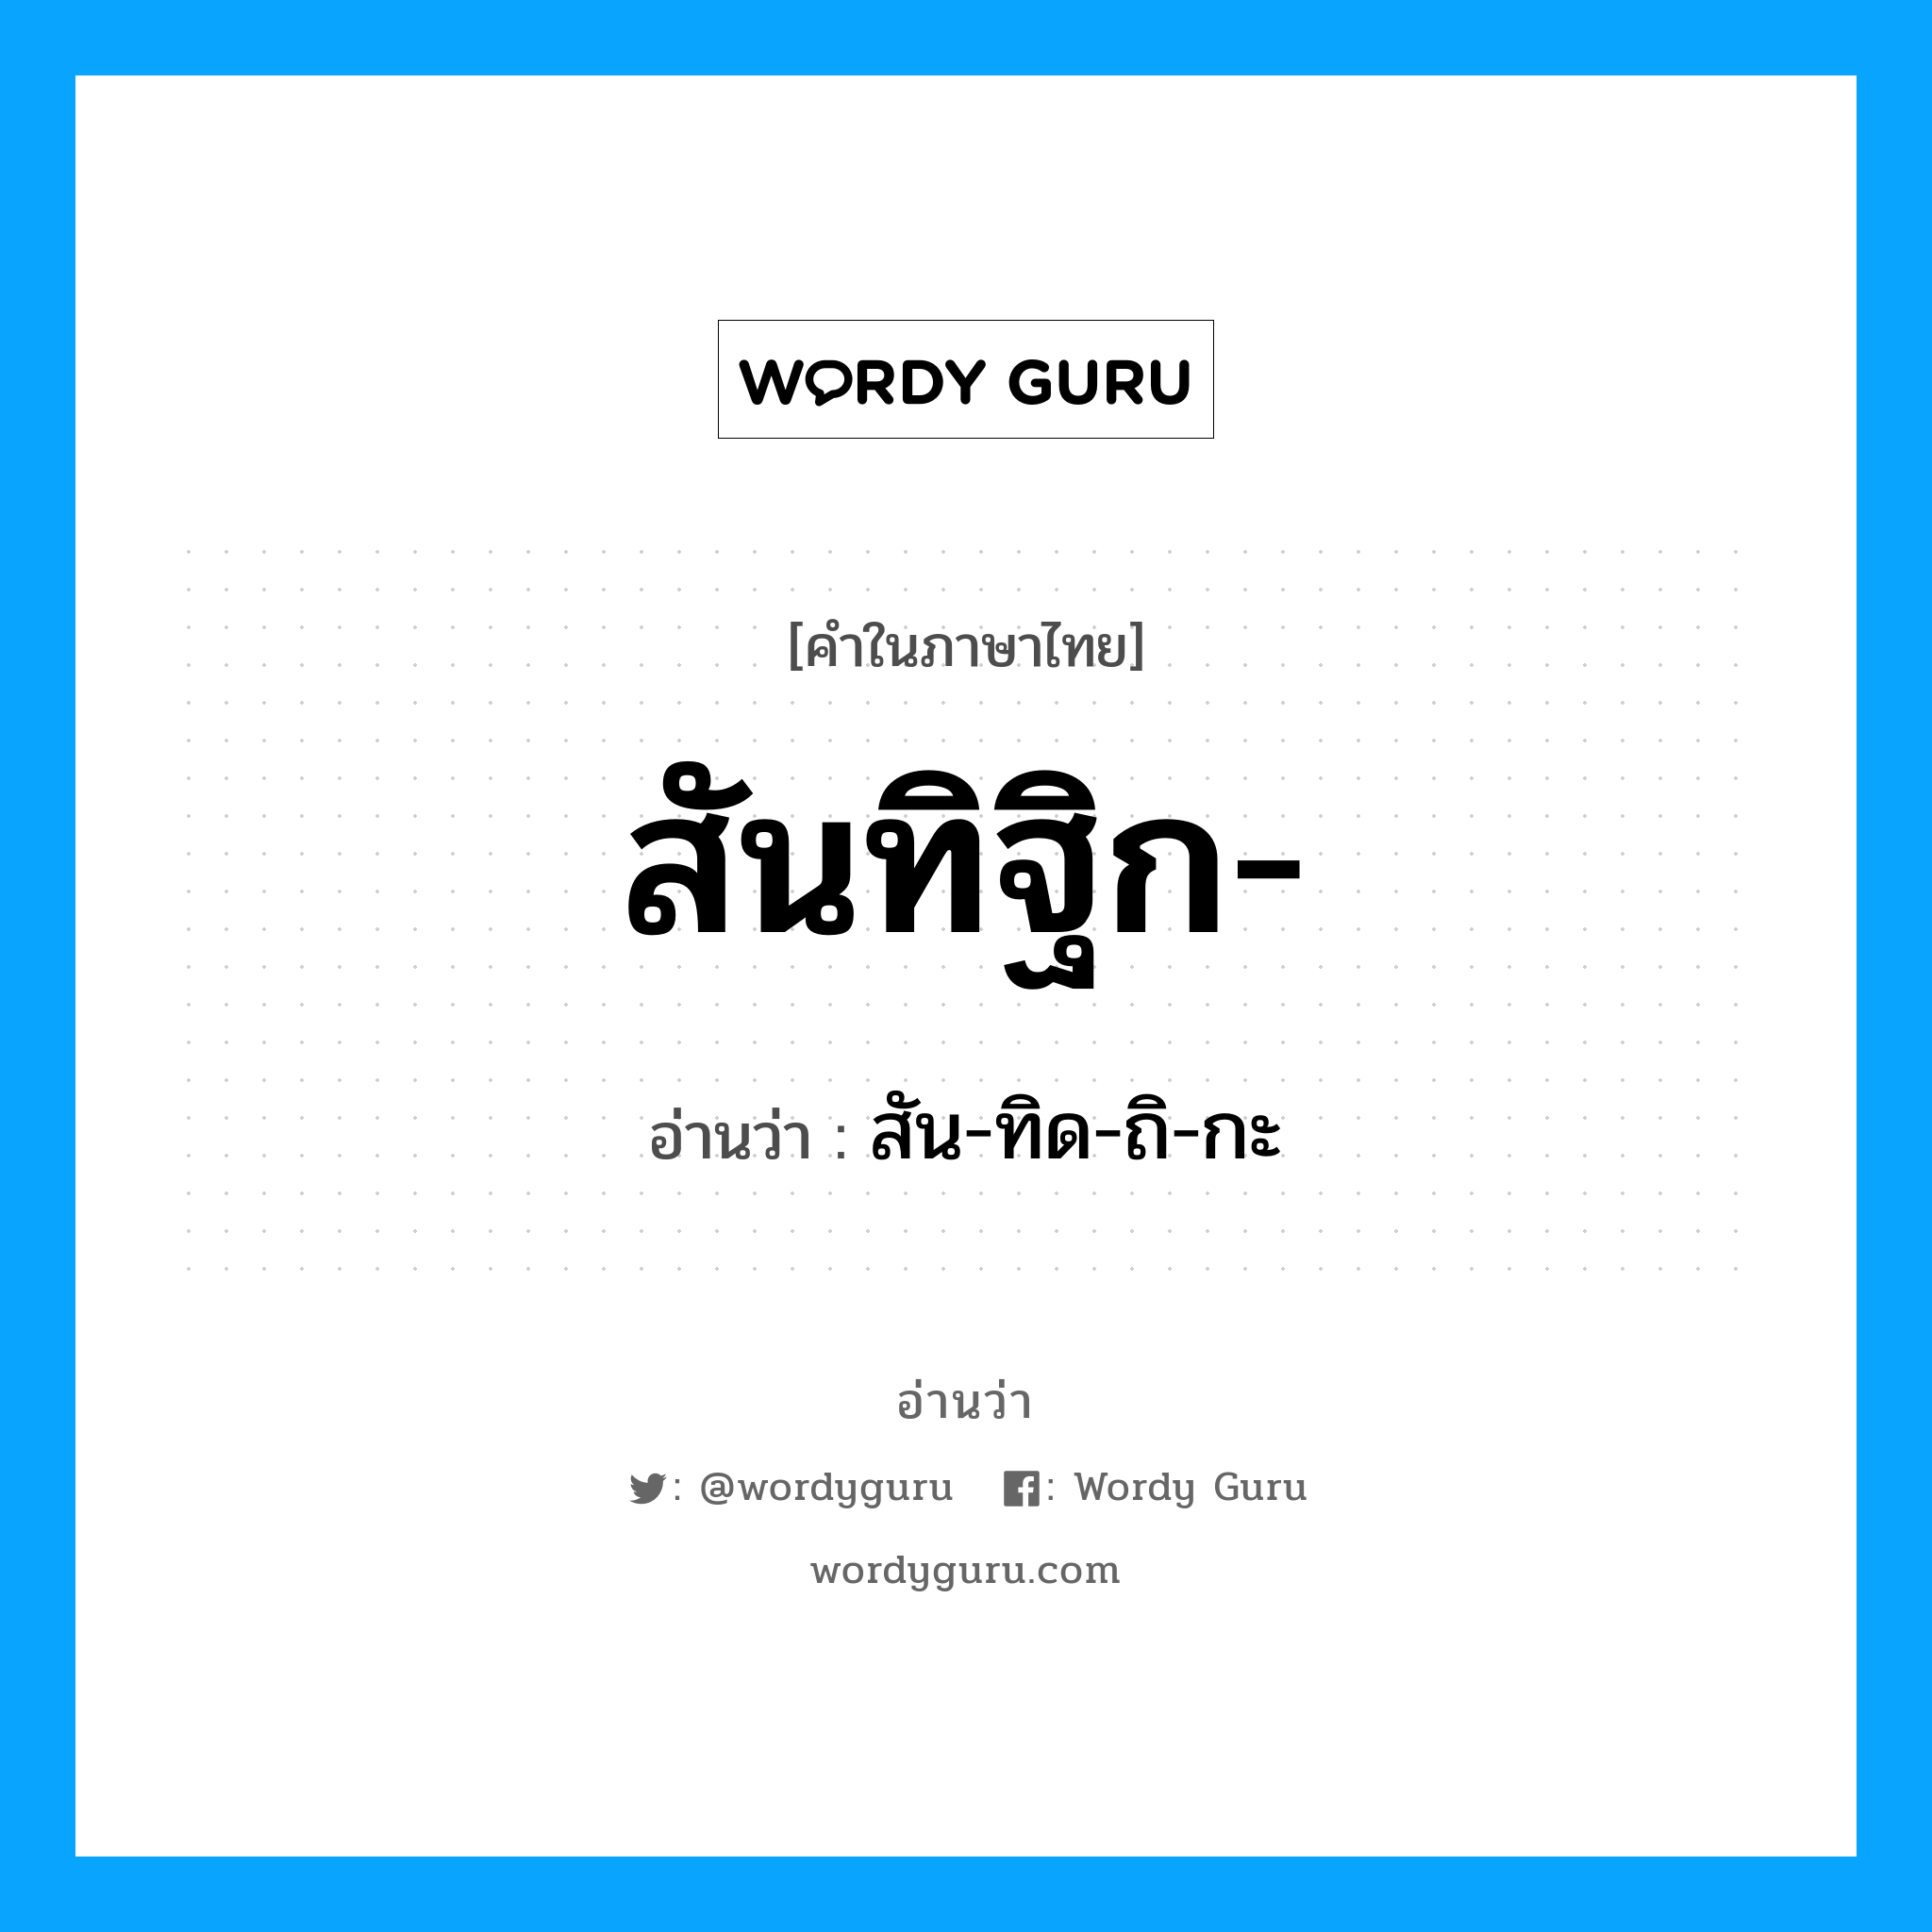 สัน-ทิด-ถิ-กะ เป็นคำอ่านของคำไหน?, คำในภาษาไทย สัน-ทิด-ถิ-กะ อ่านว่า สันทิฐิก-